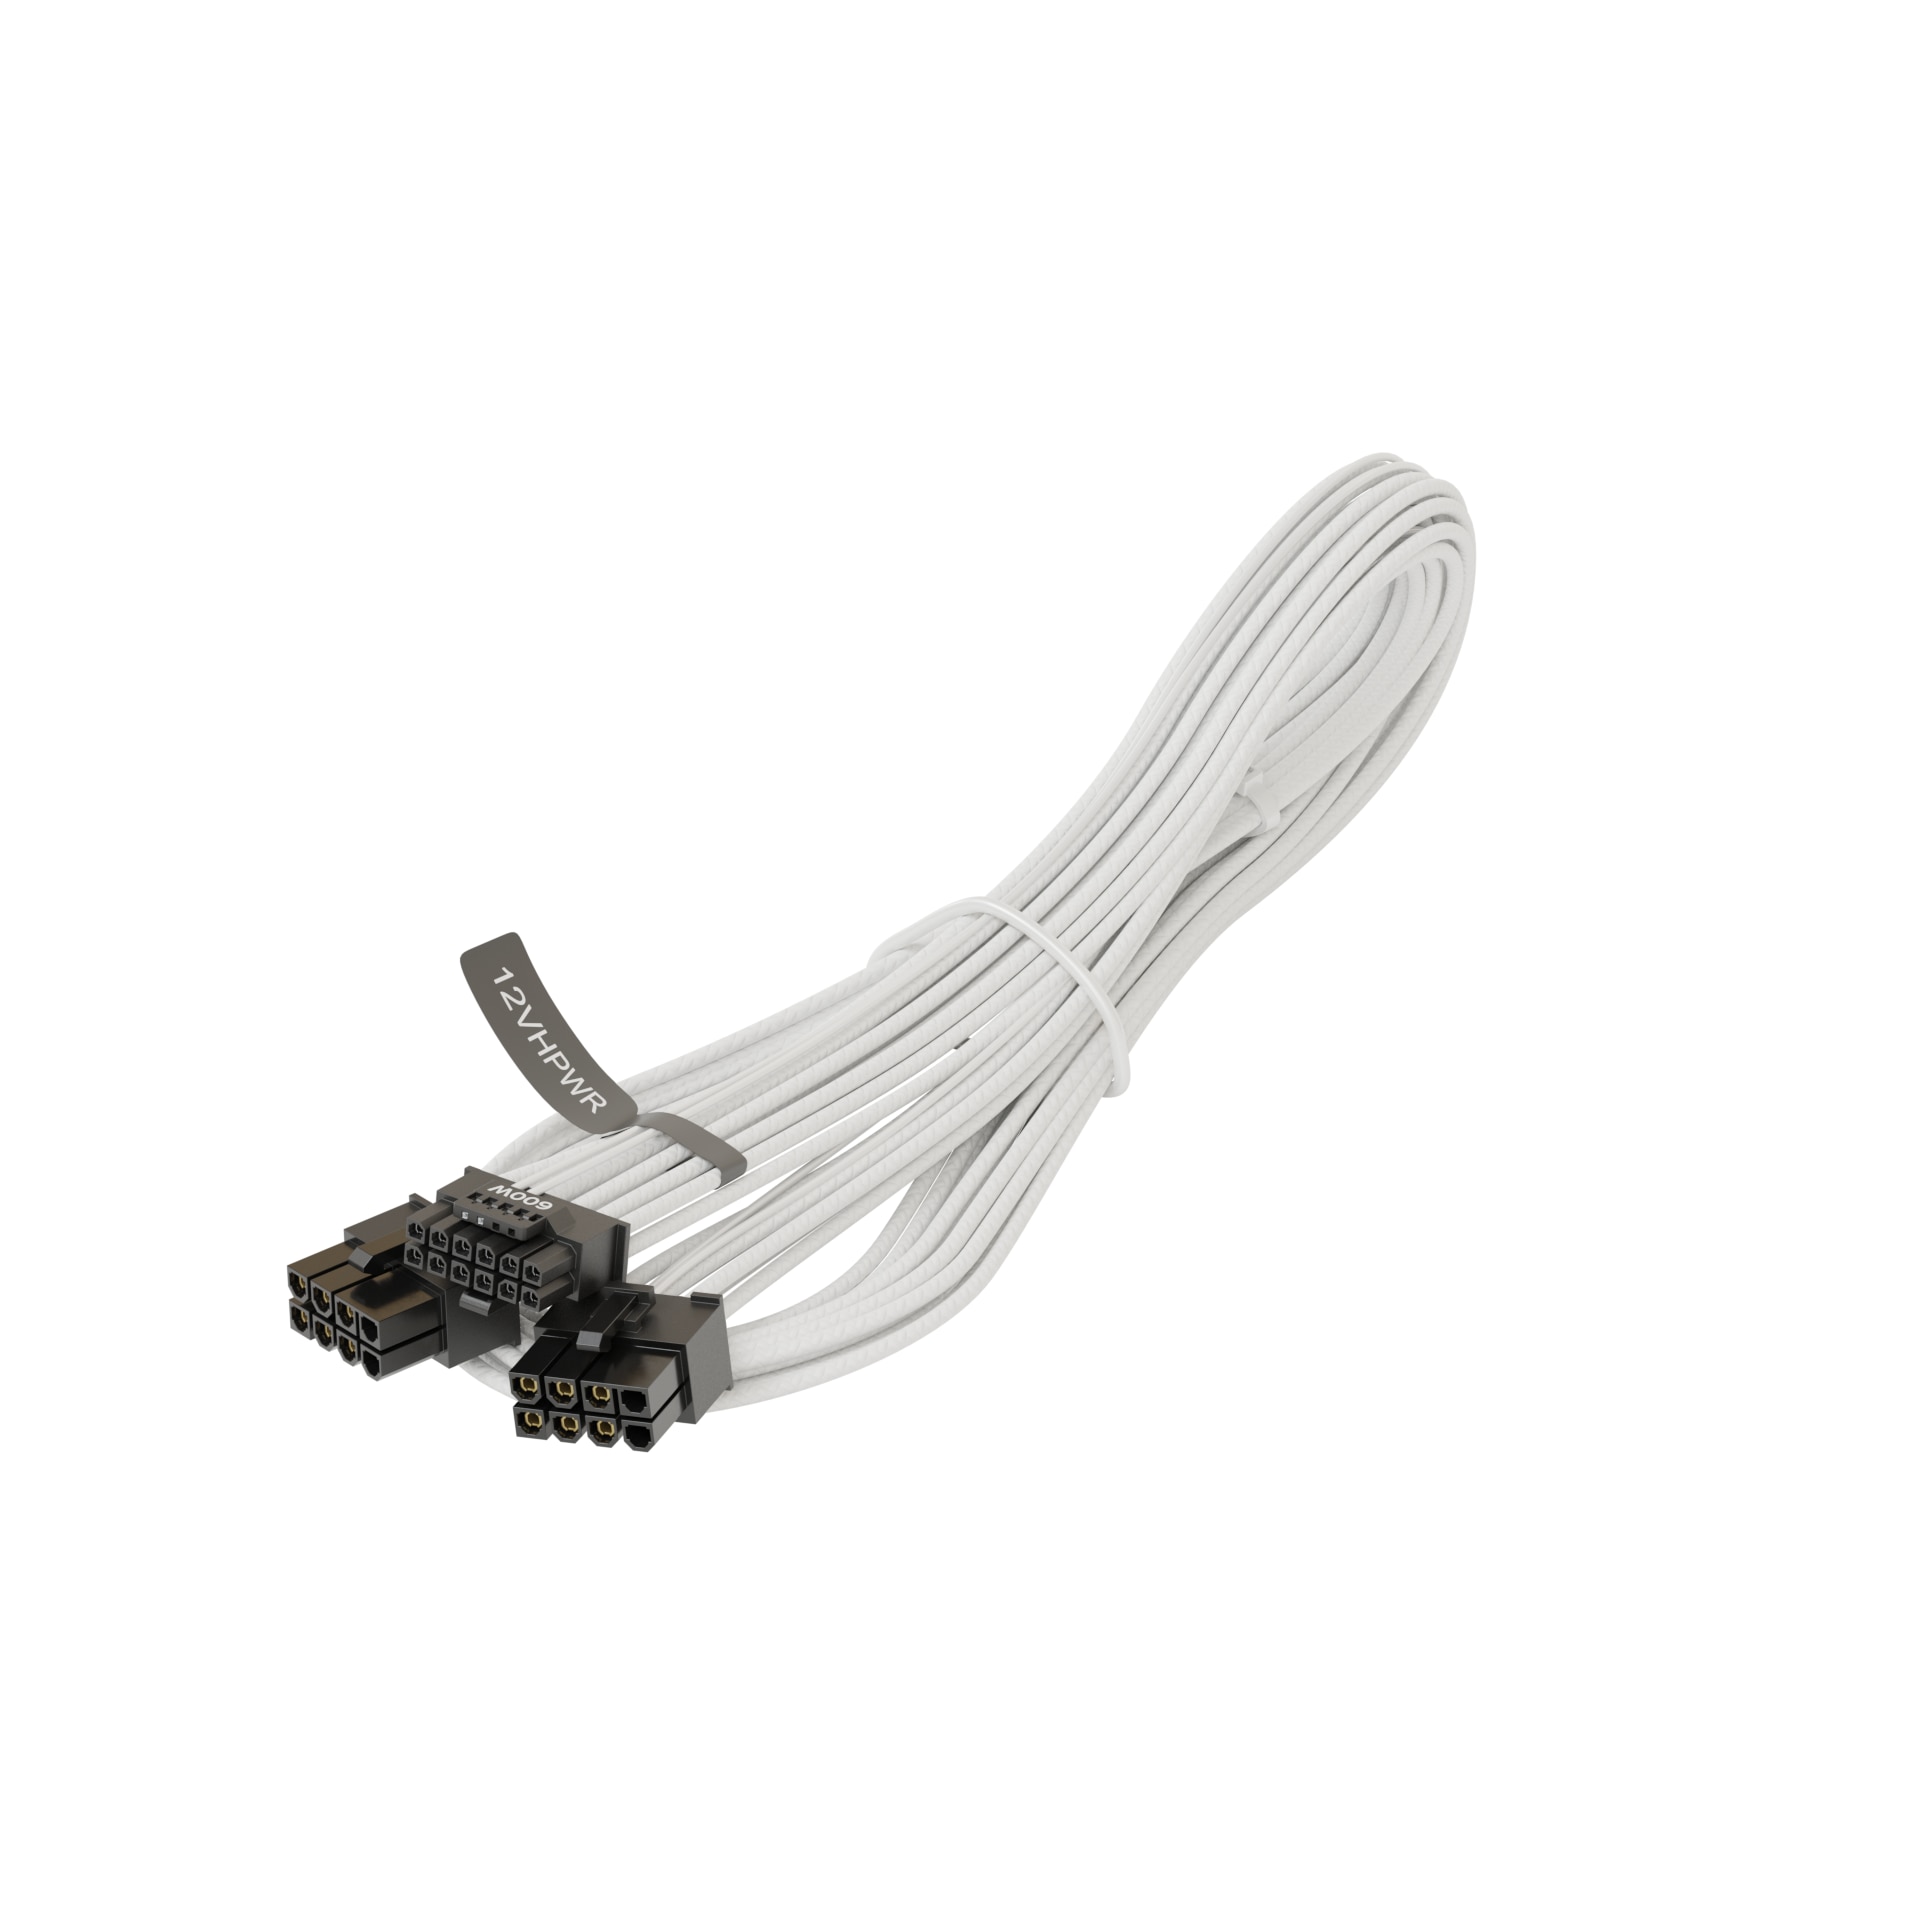 String Delegation Imagination Cablu alimentare PCI-e Seasonic 12VHPWR, 2x 8 pini la 16pini, 750 mm, White  - eMAG.ro